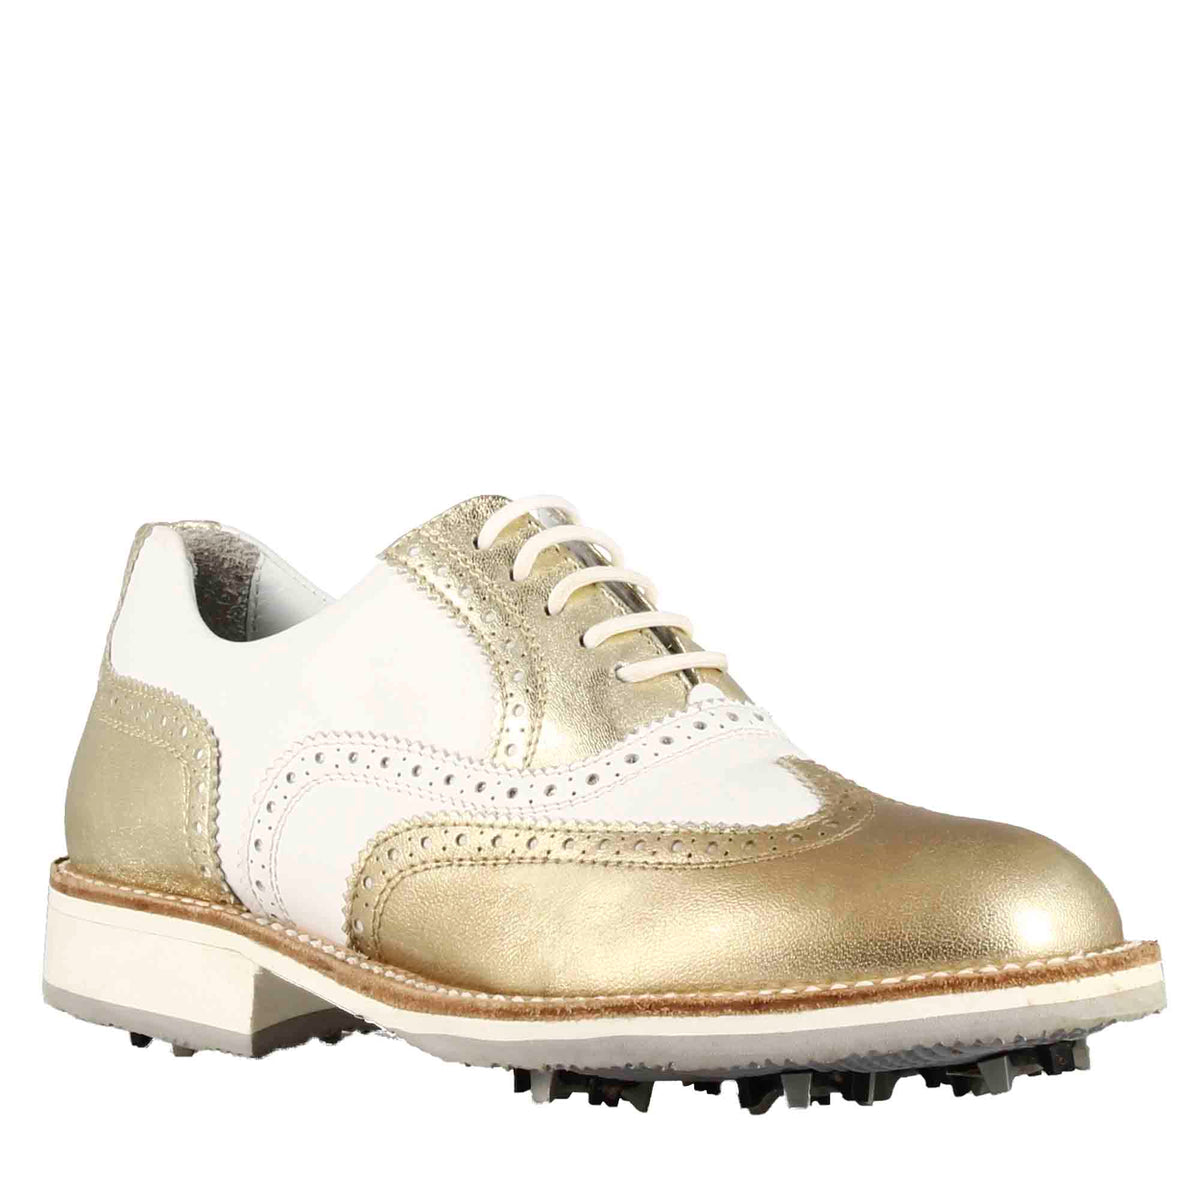 Handgefertigte Damen-Golfschuhe aus weißem Leder mit goldenen Verzierungen